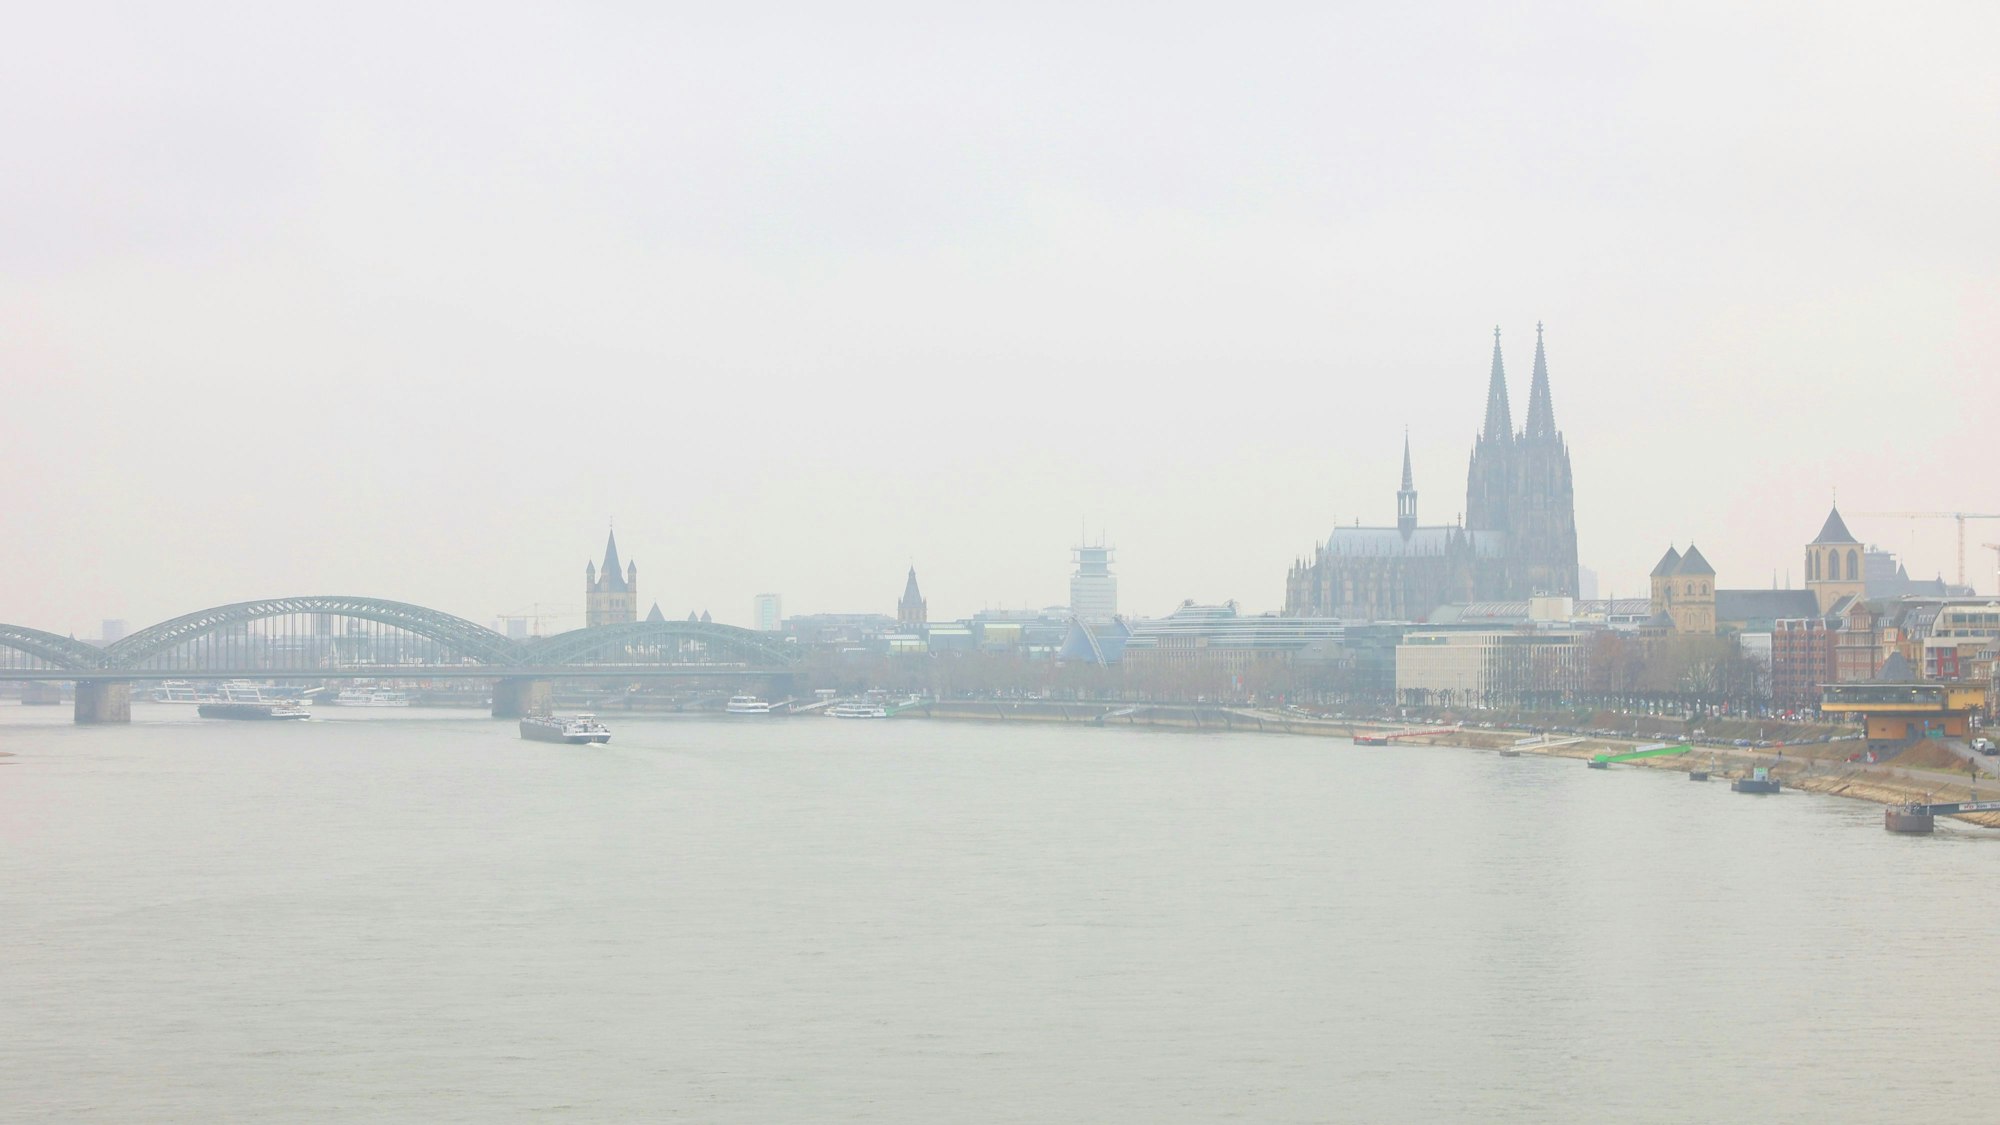 Diesiges Wetter über Köln
von der Zoobrücke aus fotografiert.